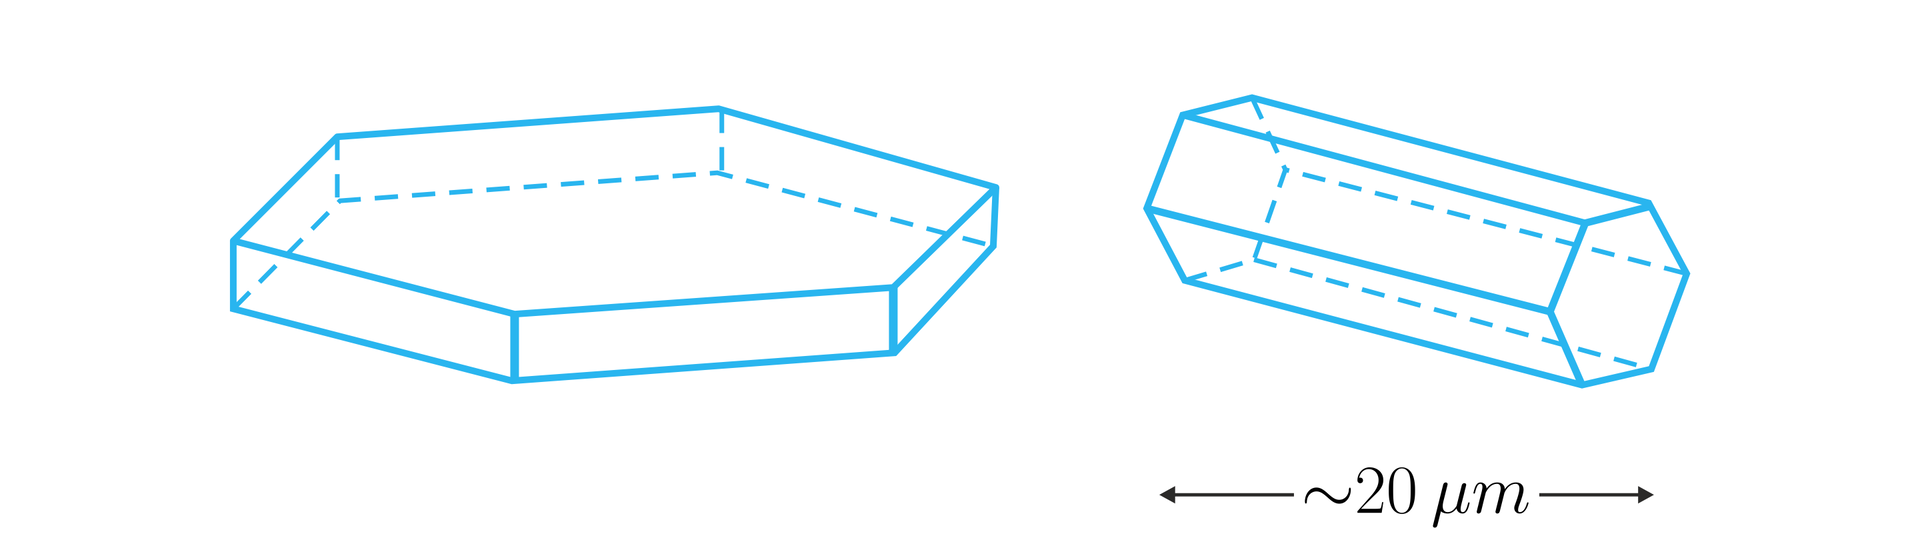 Na ilustracji przedstawiono dwa graniastosłupy prawidłowe sześciokątne. Pierwszy ma niewielką wysokość w stosunku do długości krawędzi podstawy, stąd wyglądem przypomina płaski klocek. Drugi graniastosłup położony jest na jednej ze ścian bocznych. Ma wyraźnie większą wysokość w stosunku do długości krawędzi podstawy i wyglądem przypomina kolumnę. Pod drugim graniastosłupem widnieje zapis około 20 mikrometrów, określający wielkość tego graniastosłupa.